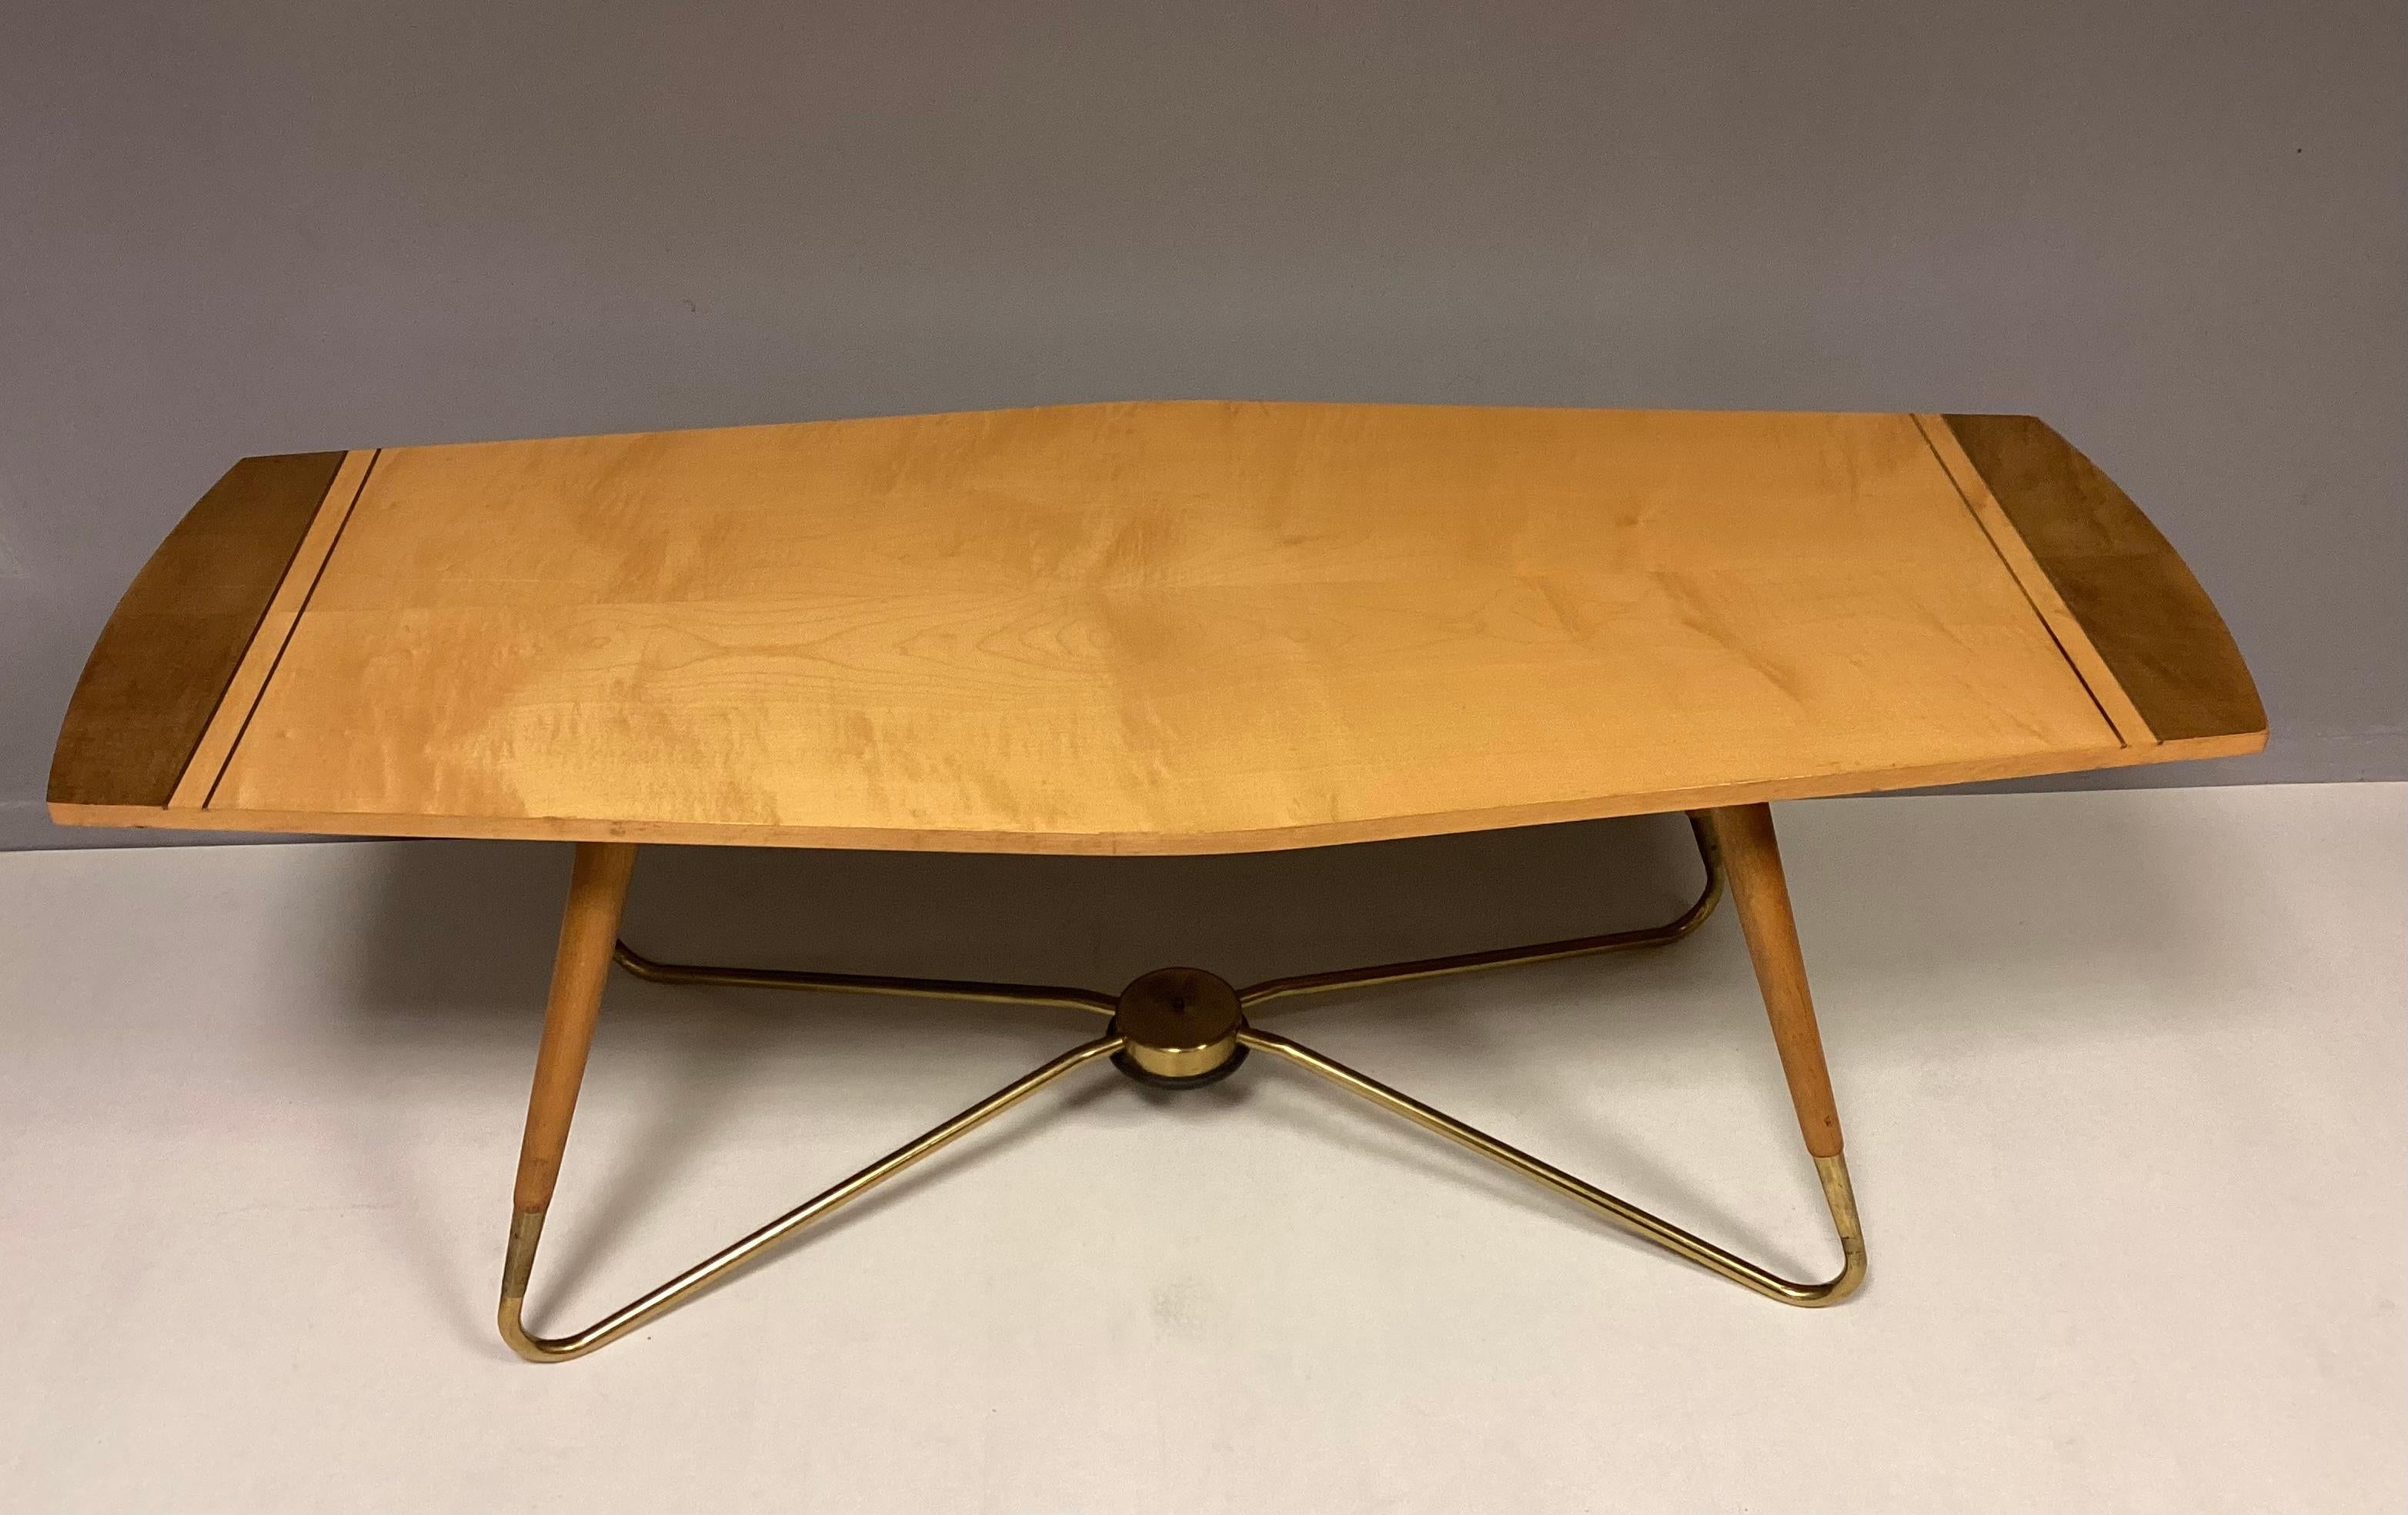 Sehr seltener und schöner Kaffeetisch aus den 50er Jahren von Ilse Möbel. 
Die Tabelle Schleife Füße und Platte hat eine sehr schöne Form. In Kombination von Holz und Messing. Auf der Unterseite befindet sich ein Stempel des Herstellers.
Der Tisch